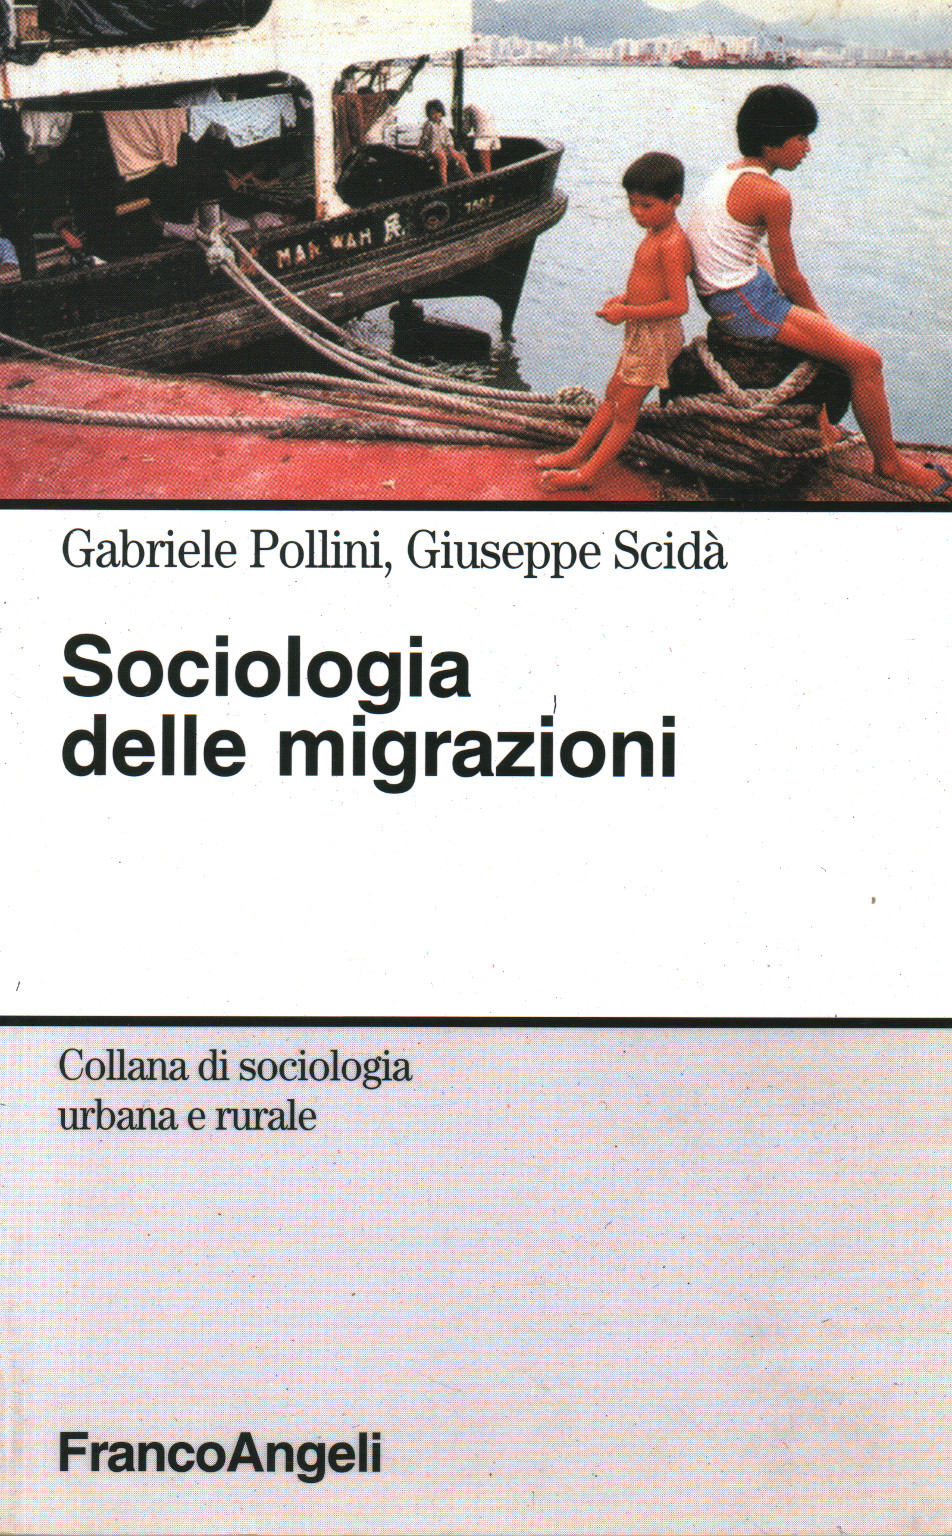 Sociologia delle migrazioni, s.a.